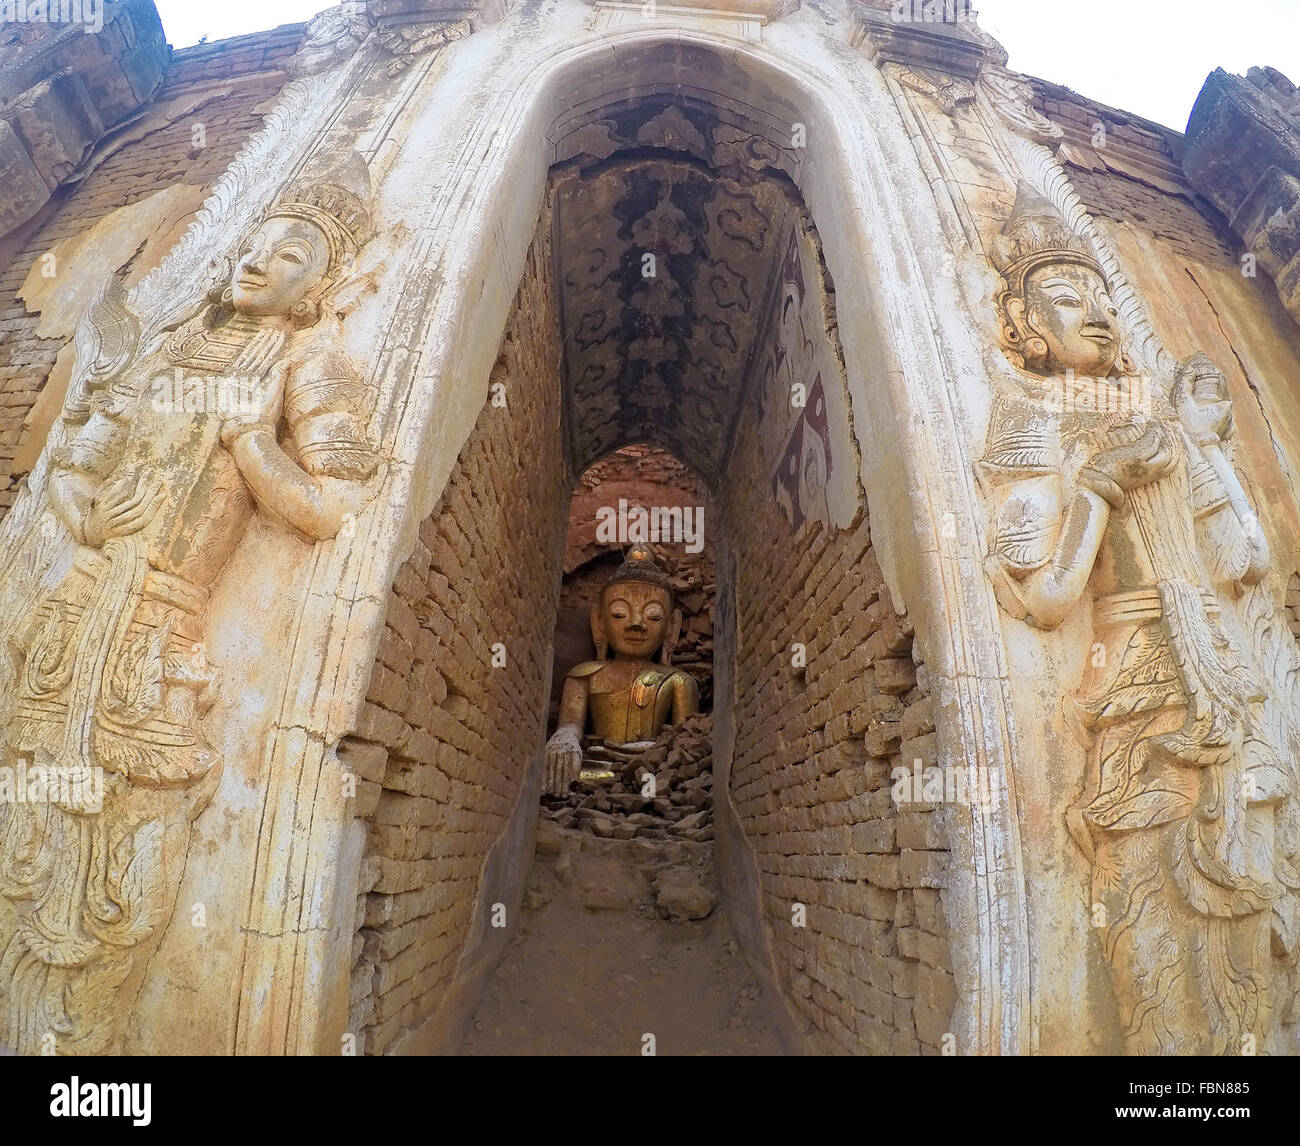 Alte buddhistische Statuen und Schnitzereien, in den bröckelnden Ruinen von Inlay Shwe Inn Thein Pagodas, Inle Lake, Myanmar (Burma), Asien Stockfoto